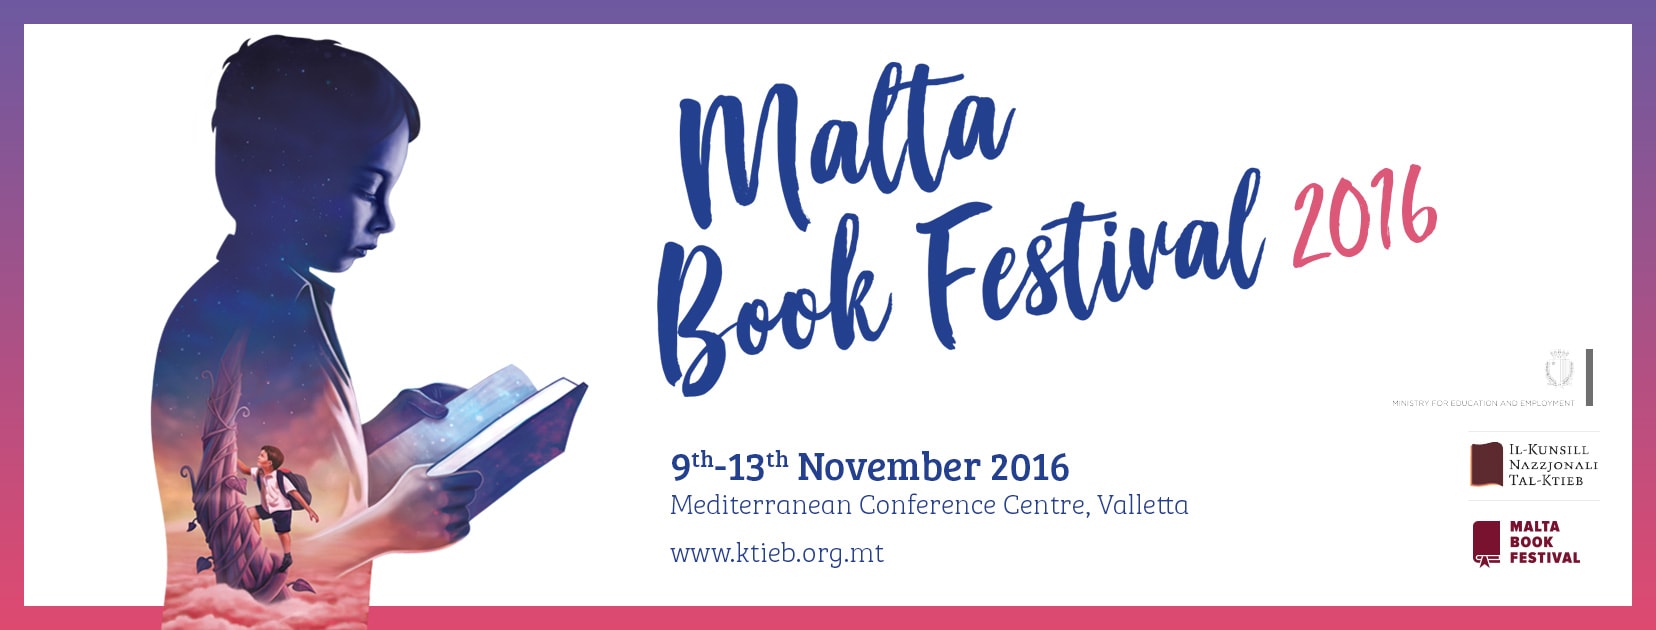 malta_book_festival_2016